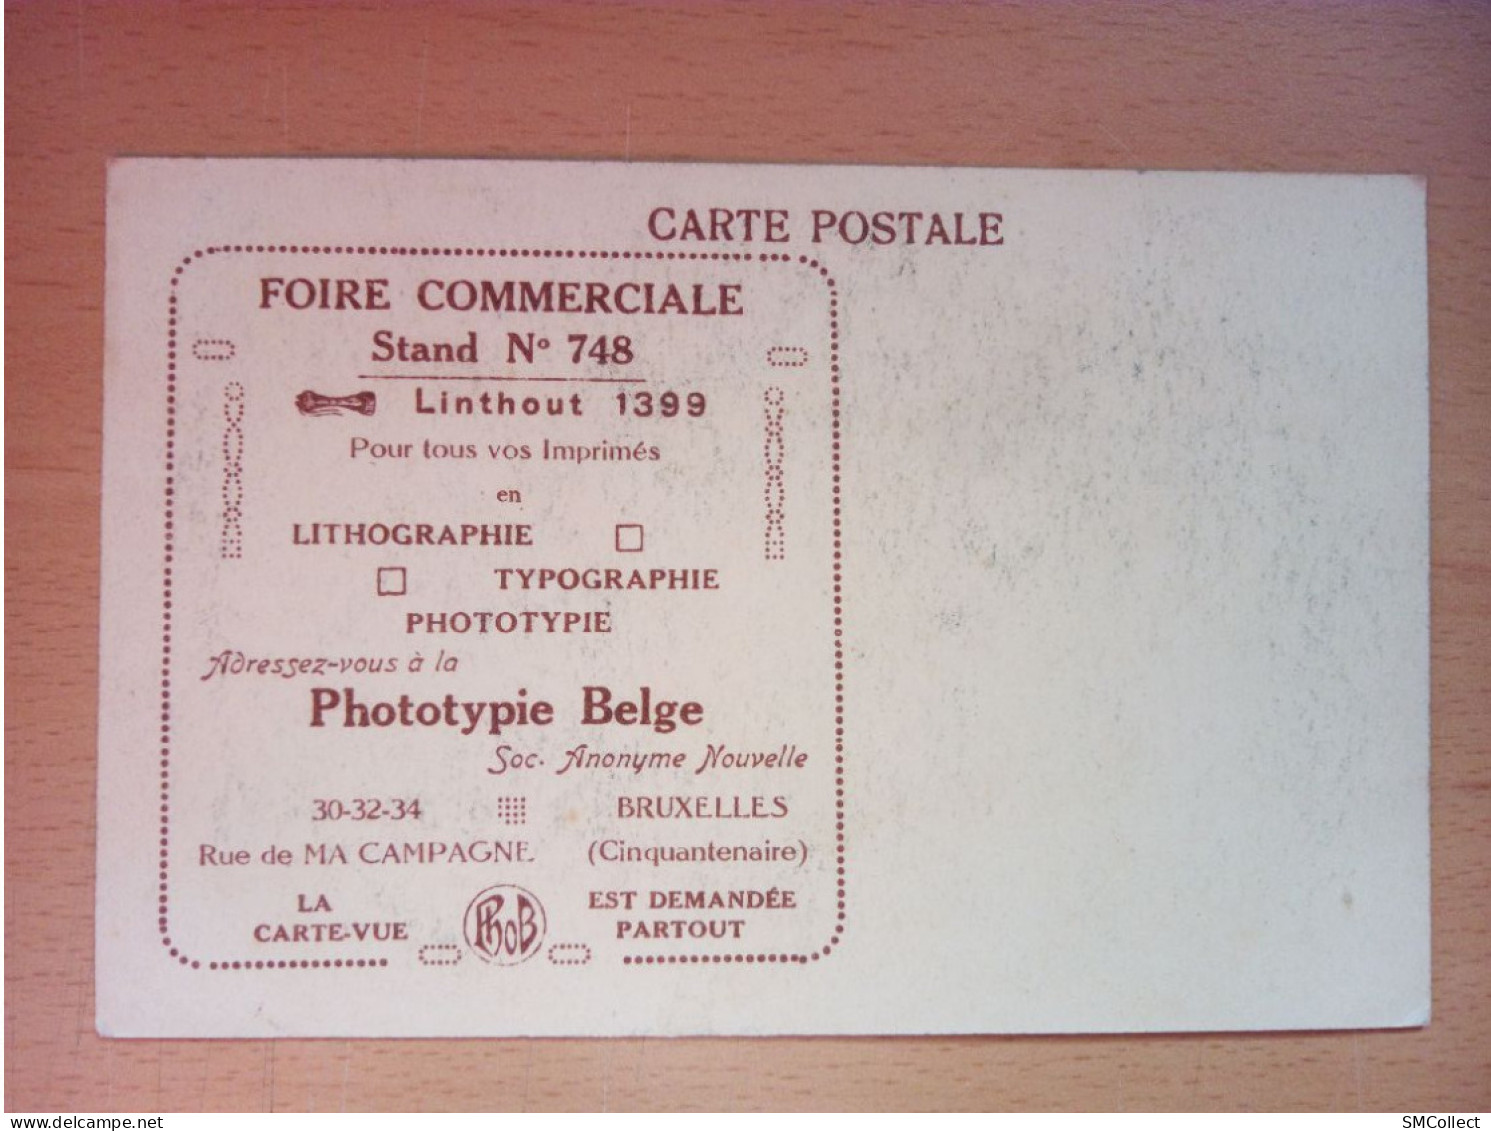 Bruxelles, Foire Commerciale. Carte Publicitaire Pour La Phototypie Belge  (A17p49) - Publicité